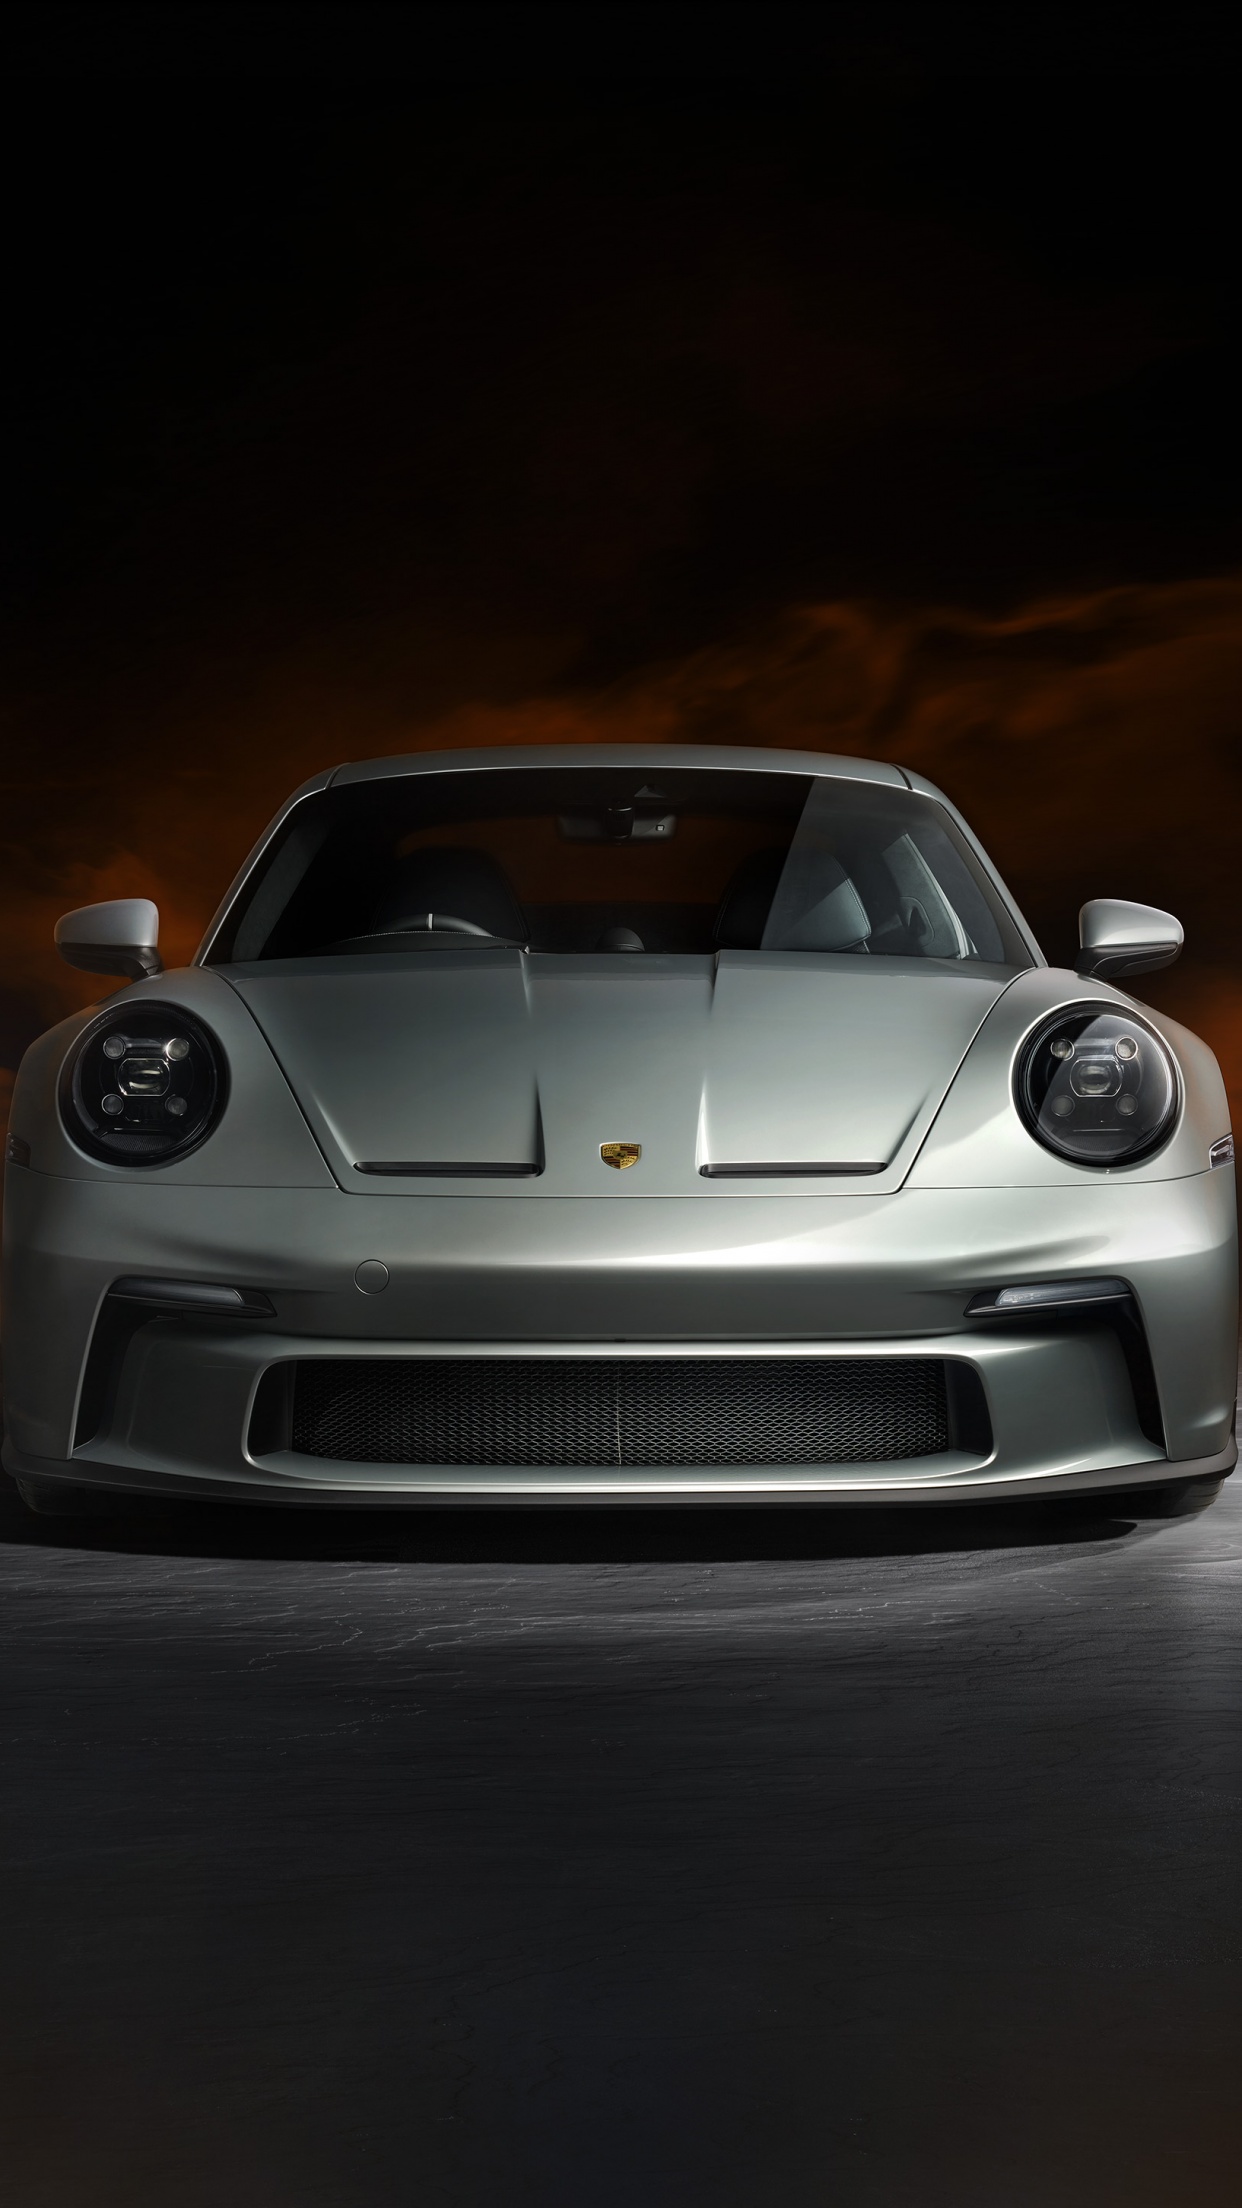 Porsche 911 at Night in Tokyo 4k · Creative Fabrica